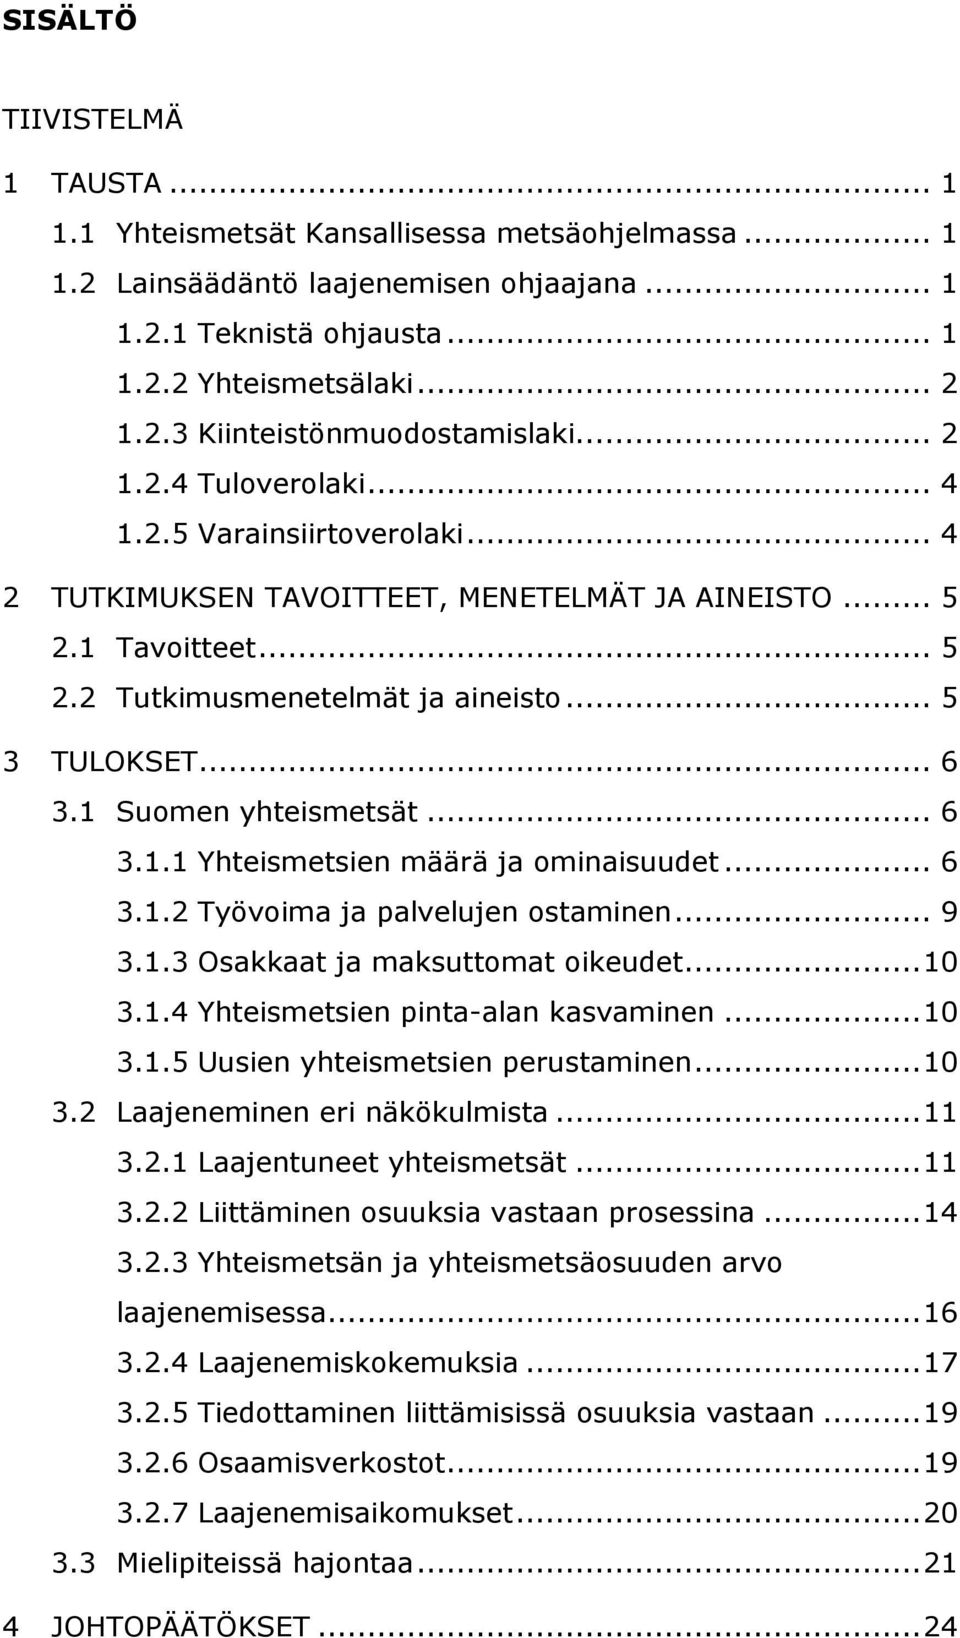 1 Suomen yhteismetsät... 6 3.1.1 Yhteismetsien määrä ja ominaisuudet... 6 3.1.2 Työvoima ja palvelujen ostaminen... 9 3.1.3 Osakkaat ja maksuttomat oikeudet...10 3.1.4 Yhteismetsien pinta-alan kasvaminen.